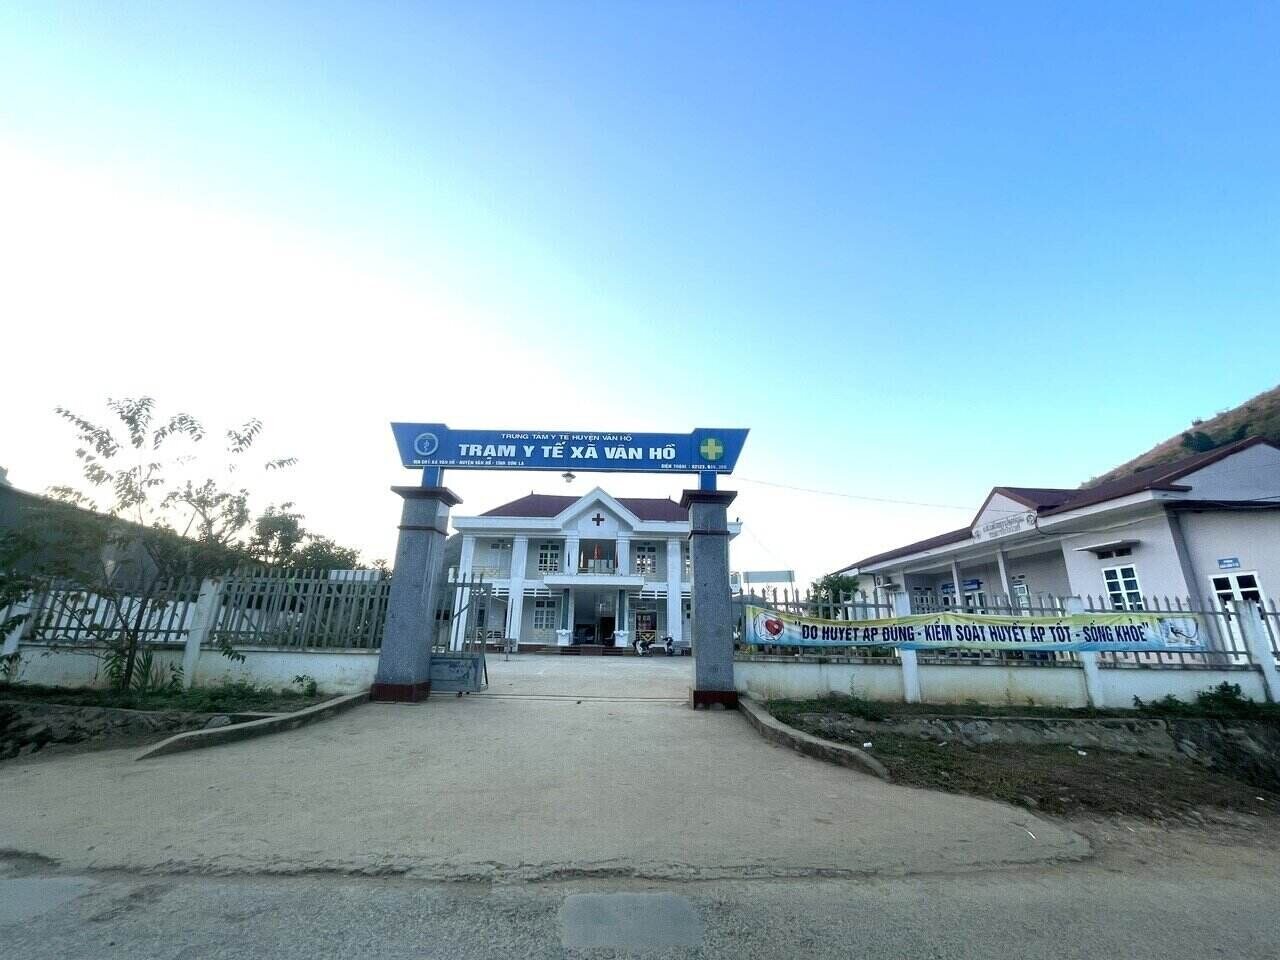 Trạm Y tế xã Vân Hồ đảm nhiệm việc chăm sóc sức khoẻ ban đầu cho người dân vùng trung tâm huyện Vân Hồ. Ảnh: Khánh Linh